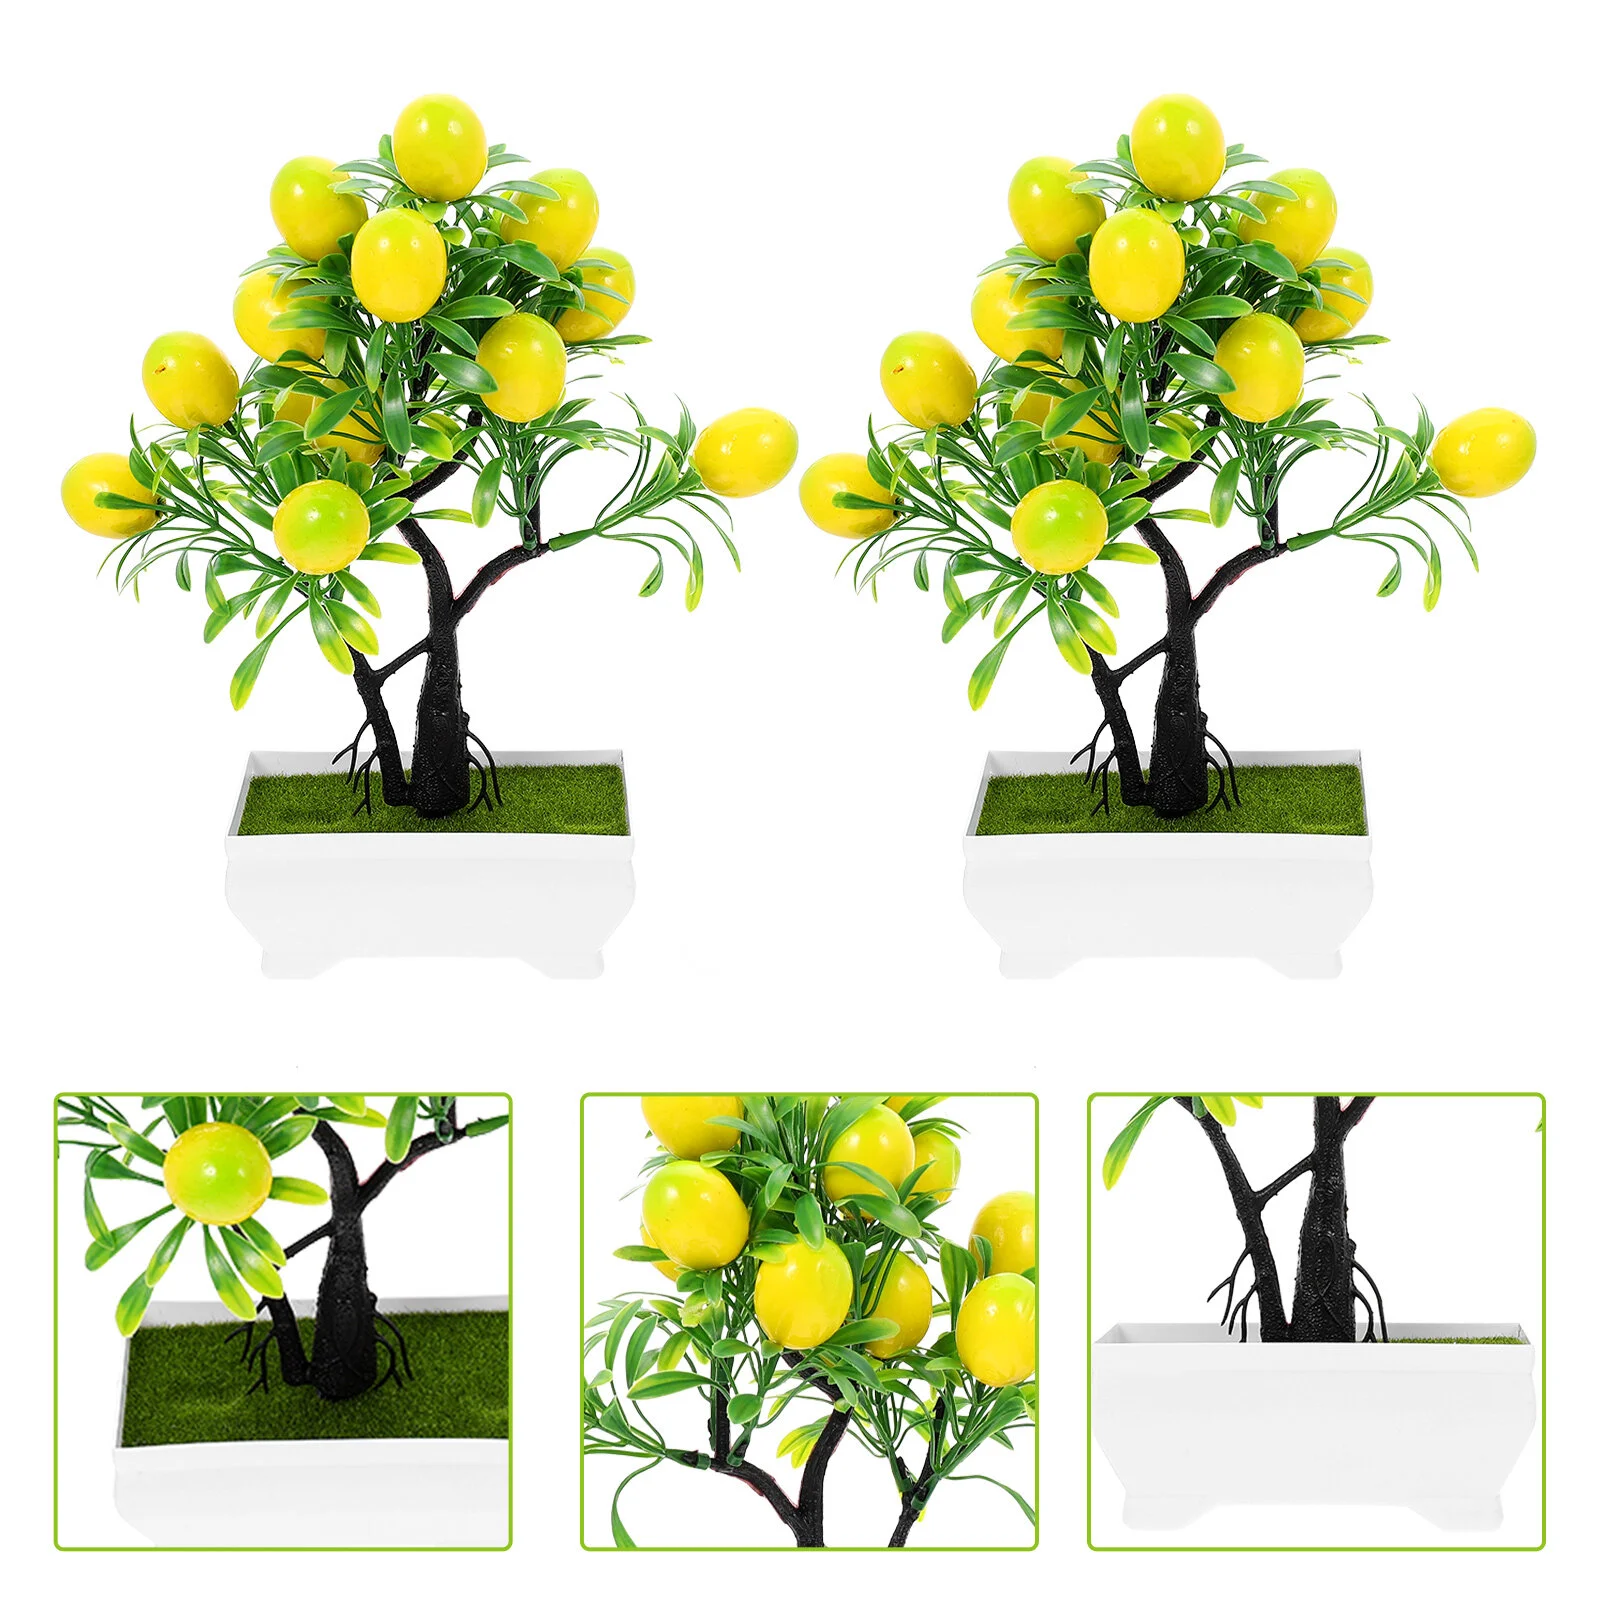 

Искусственный лимон в горшке, искусственное дерево бонсай, настольные украшения, искусственные декорации, бонсай, имитация фруктов